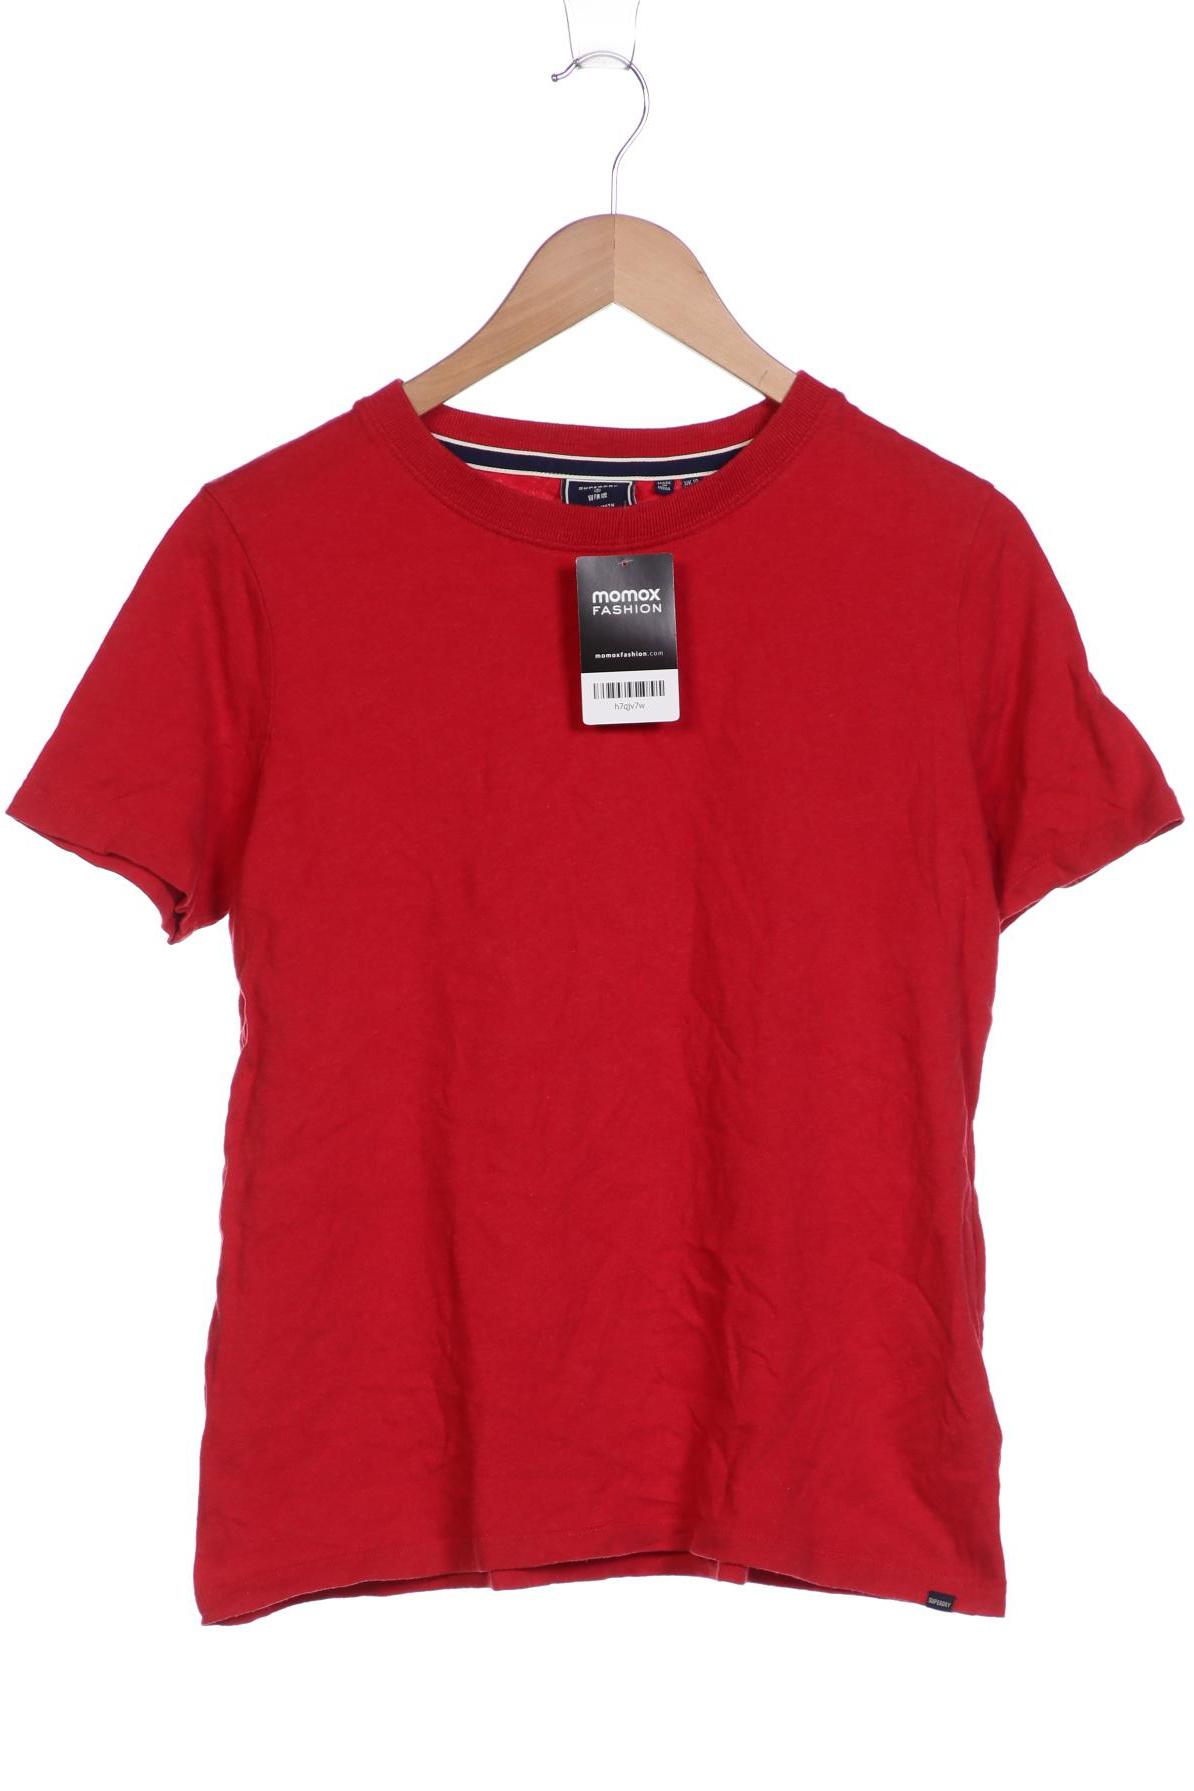 Superdry Damen T-Shirt, rot, Gr. 10 von Superdry